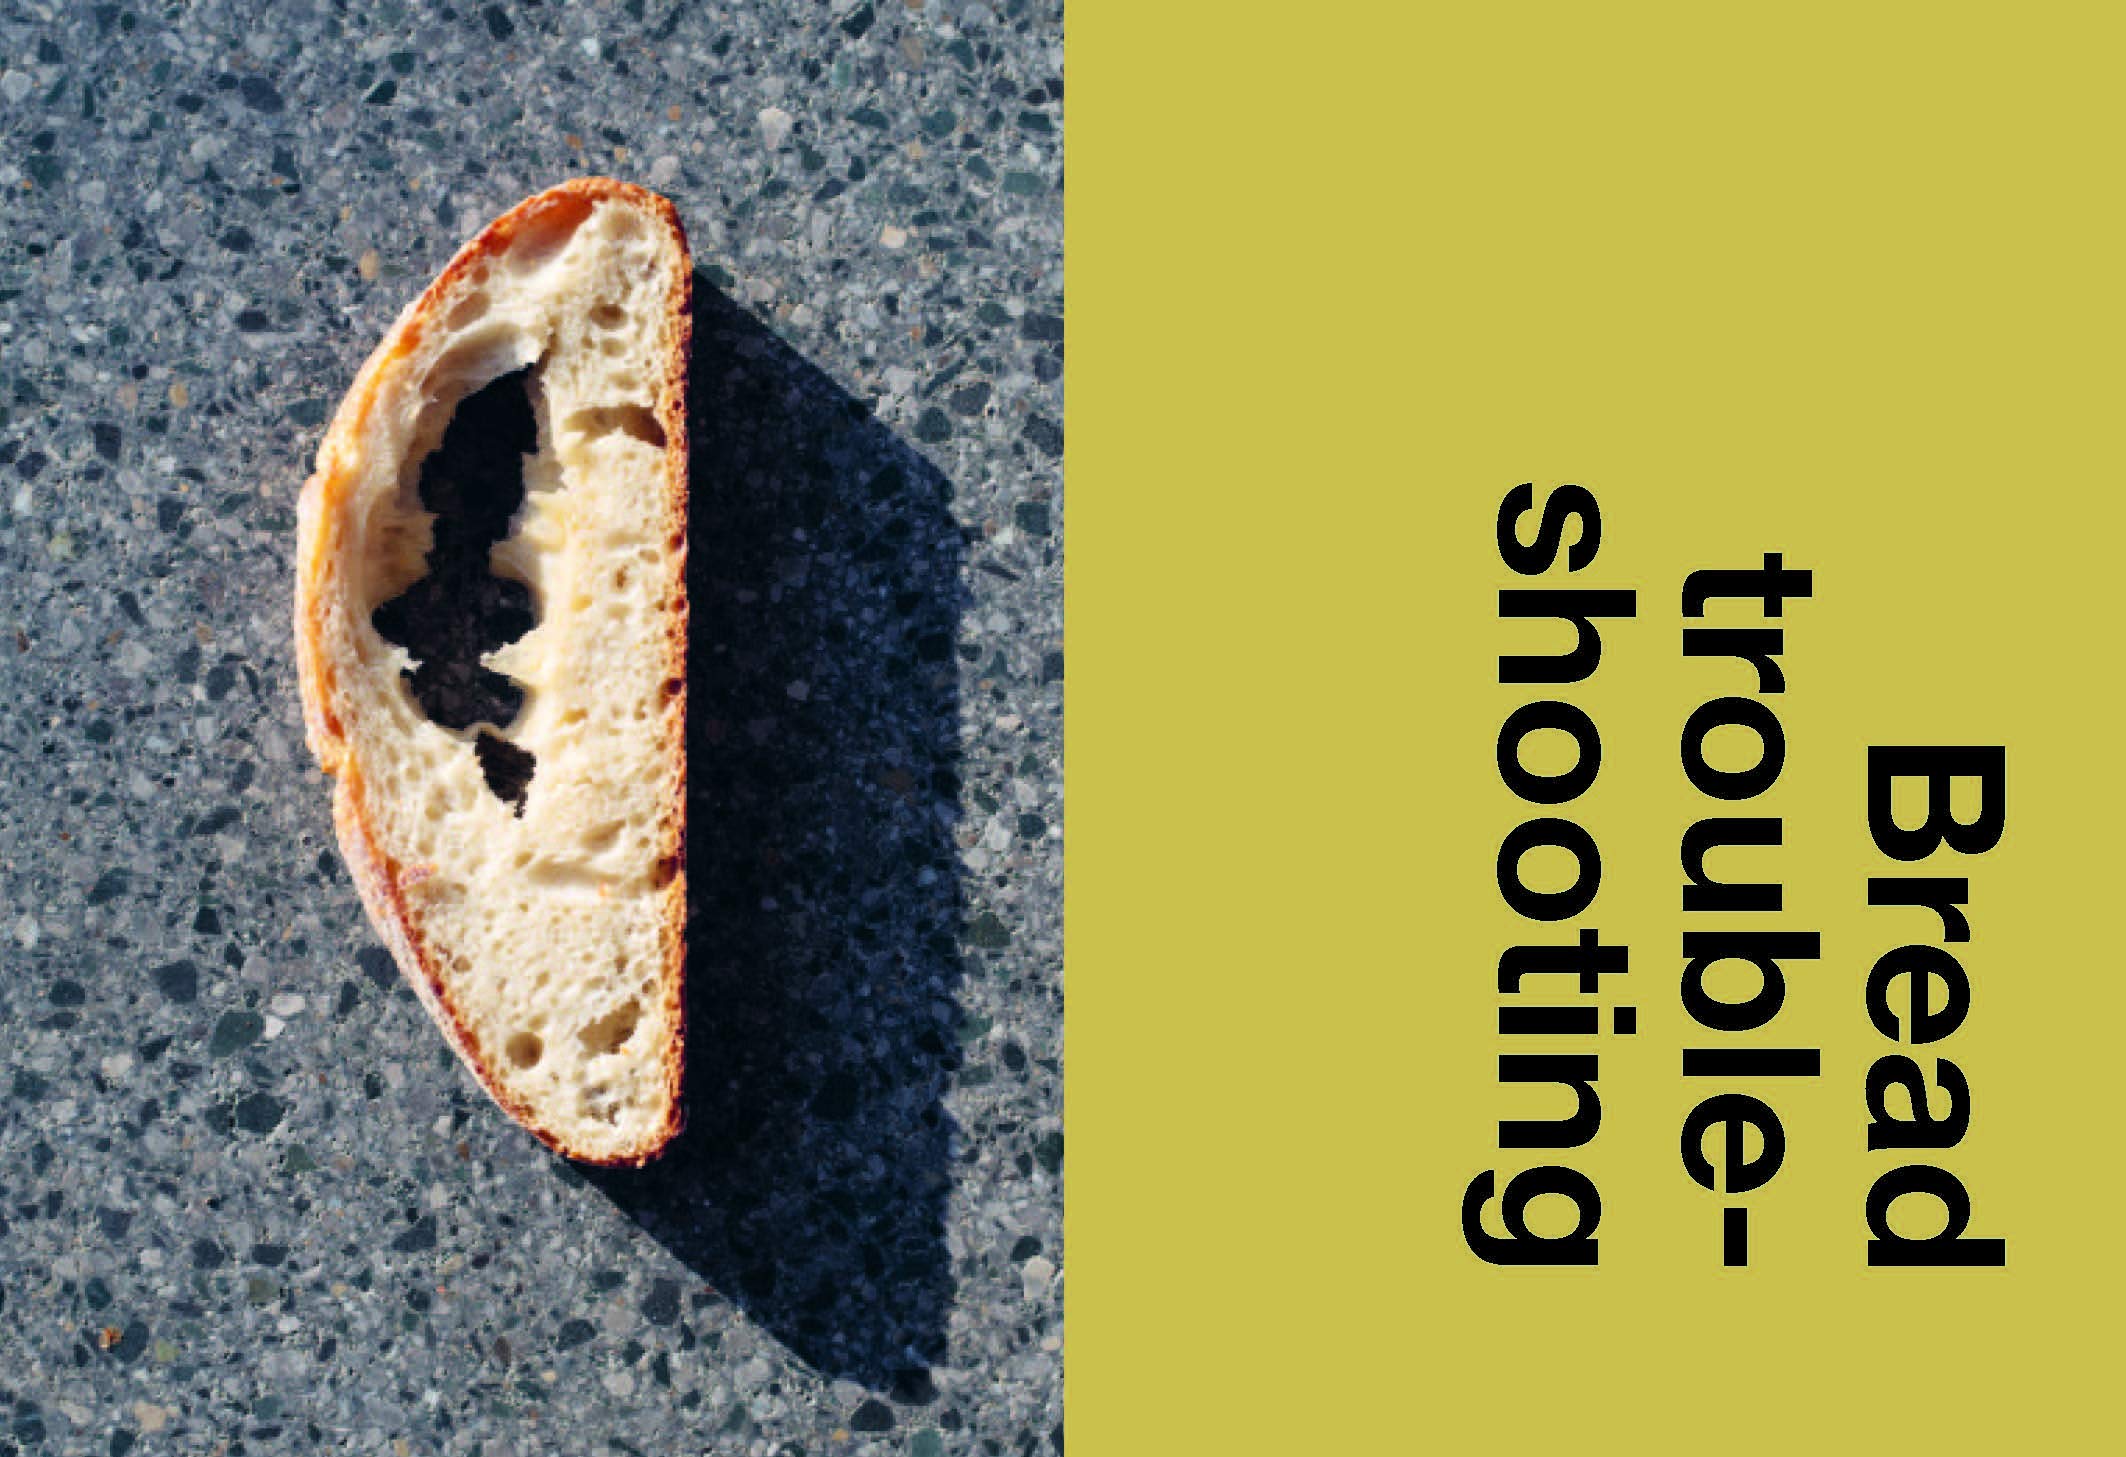 Sourdough: Slow Down, Make Bread